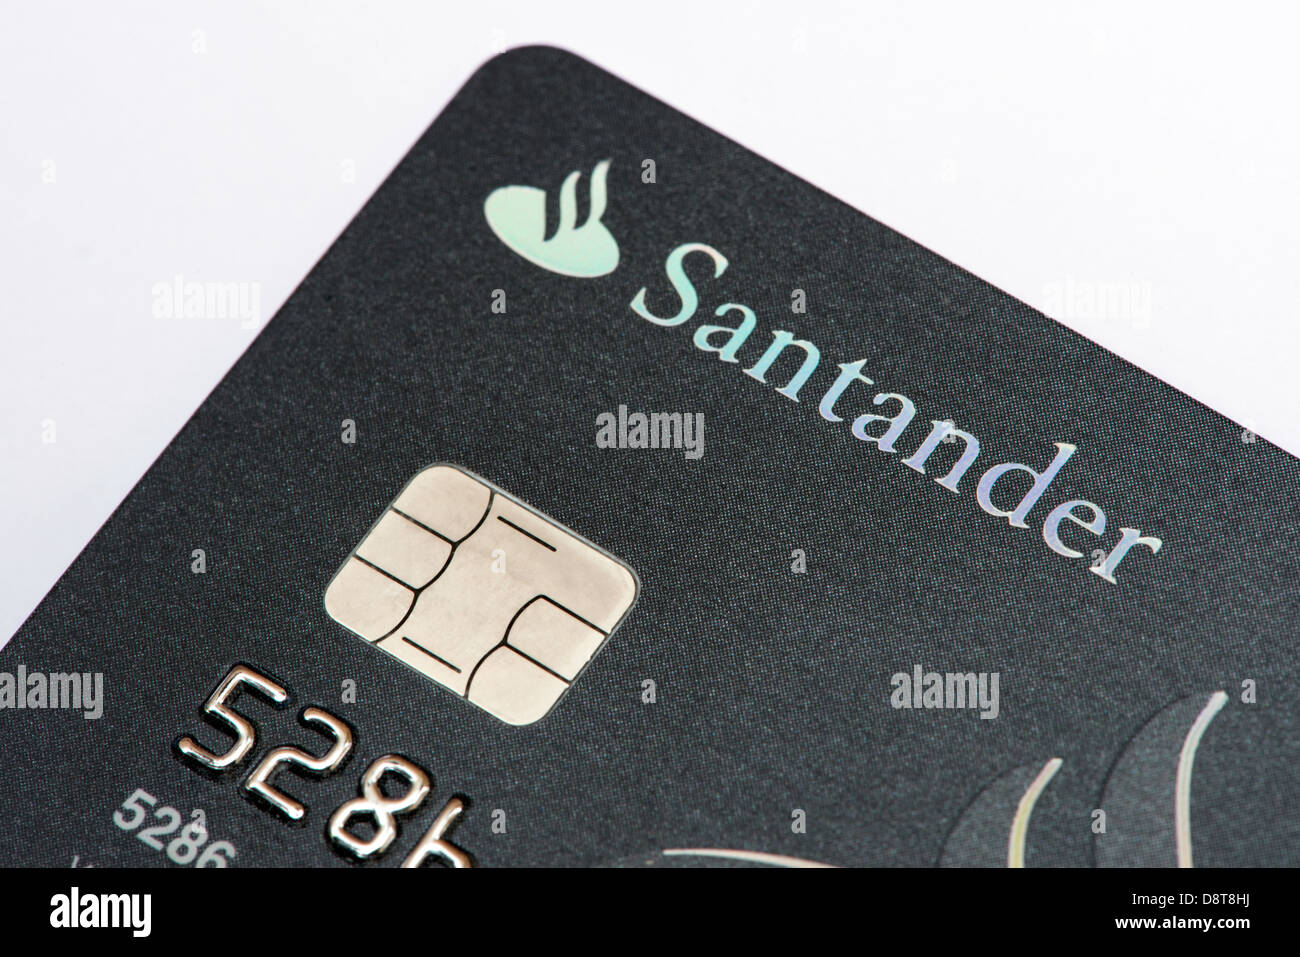 Santander debit card abroad